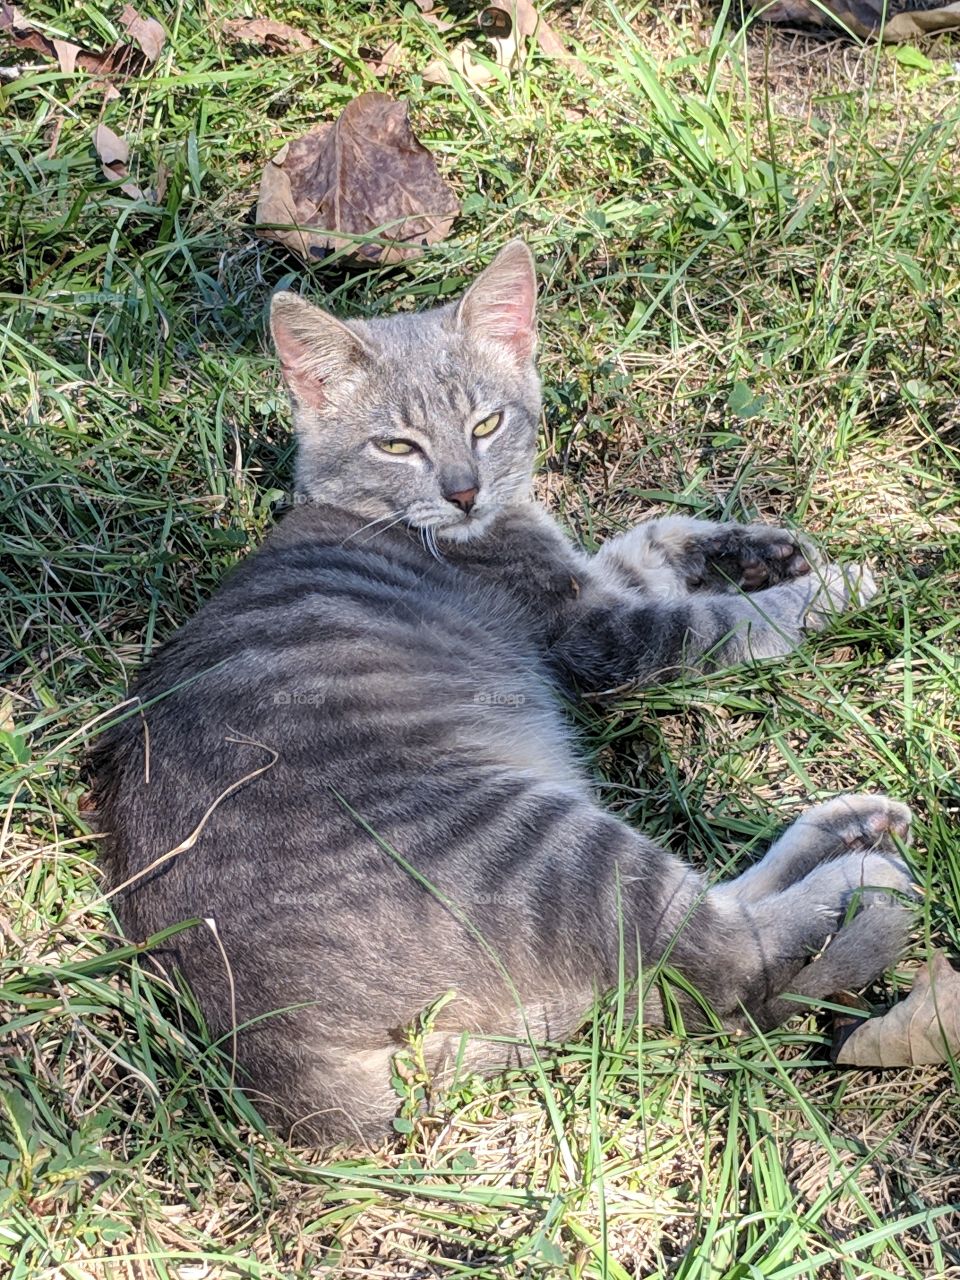 My itty bitty grey striped kitty